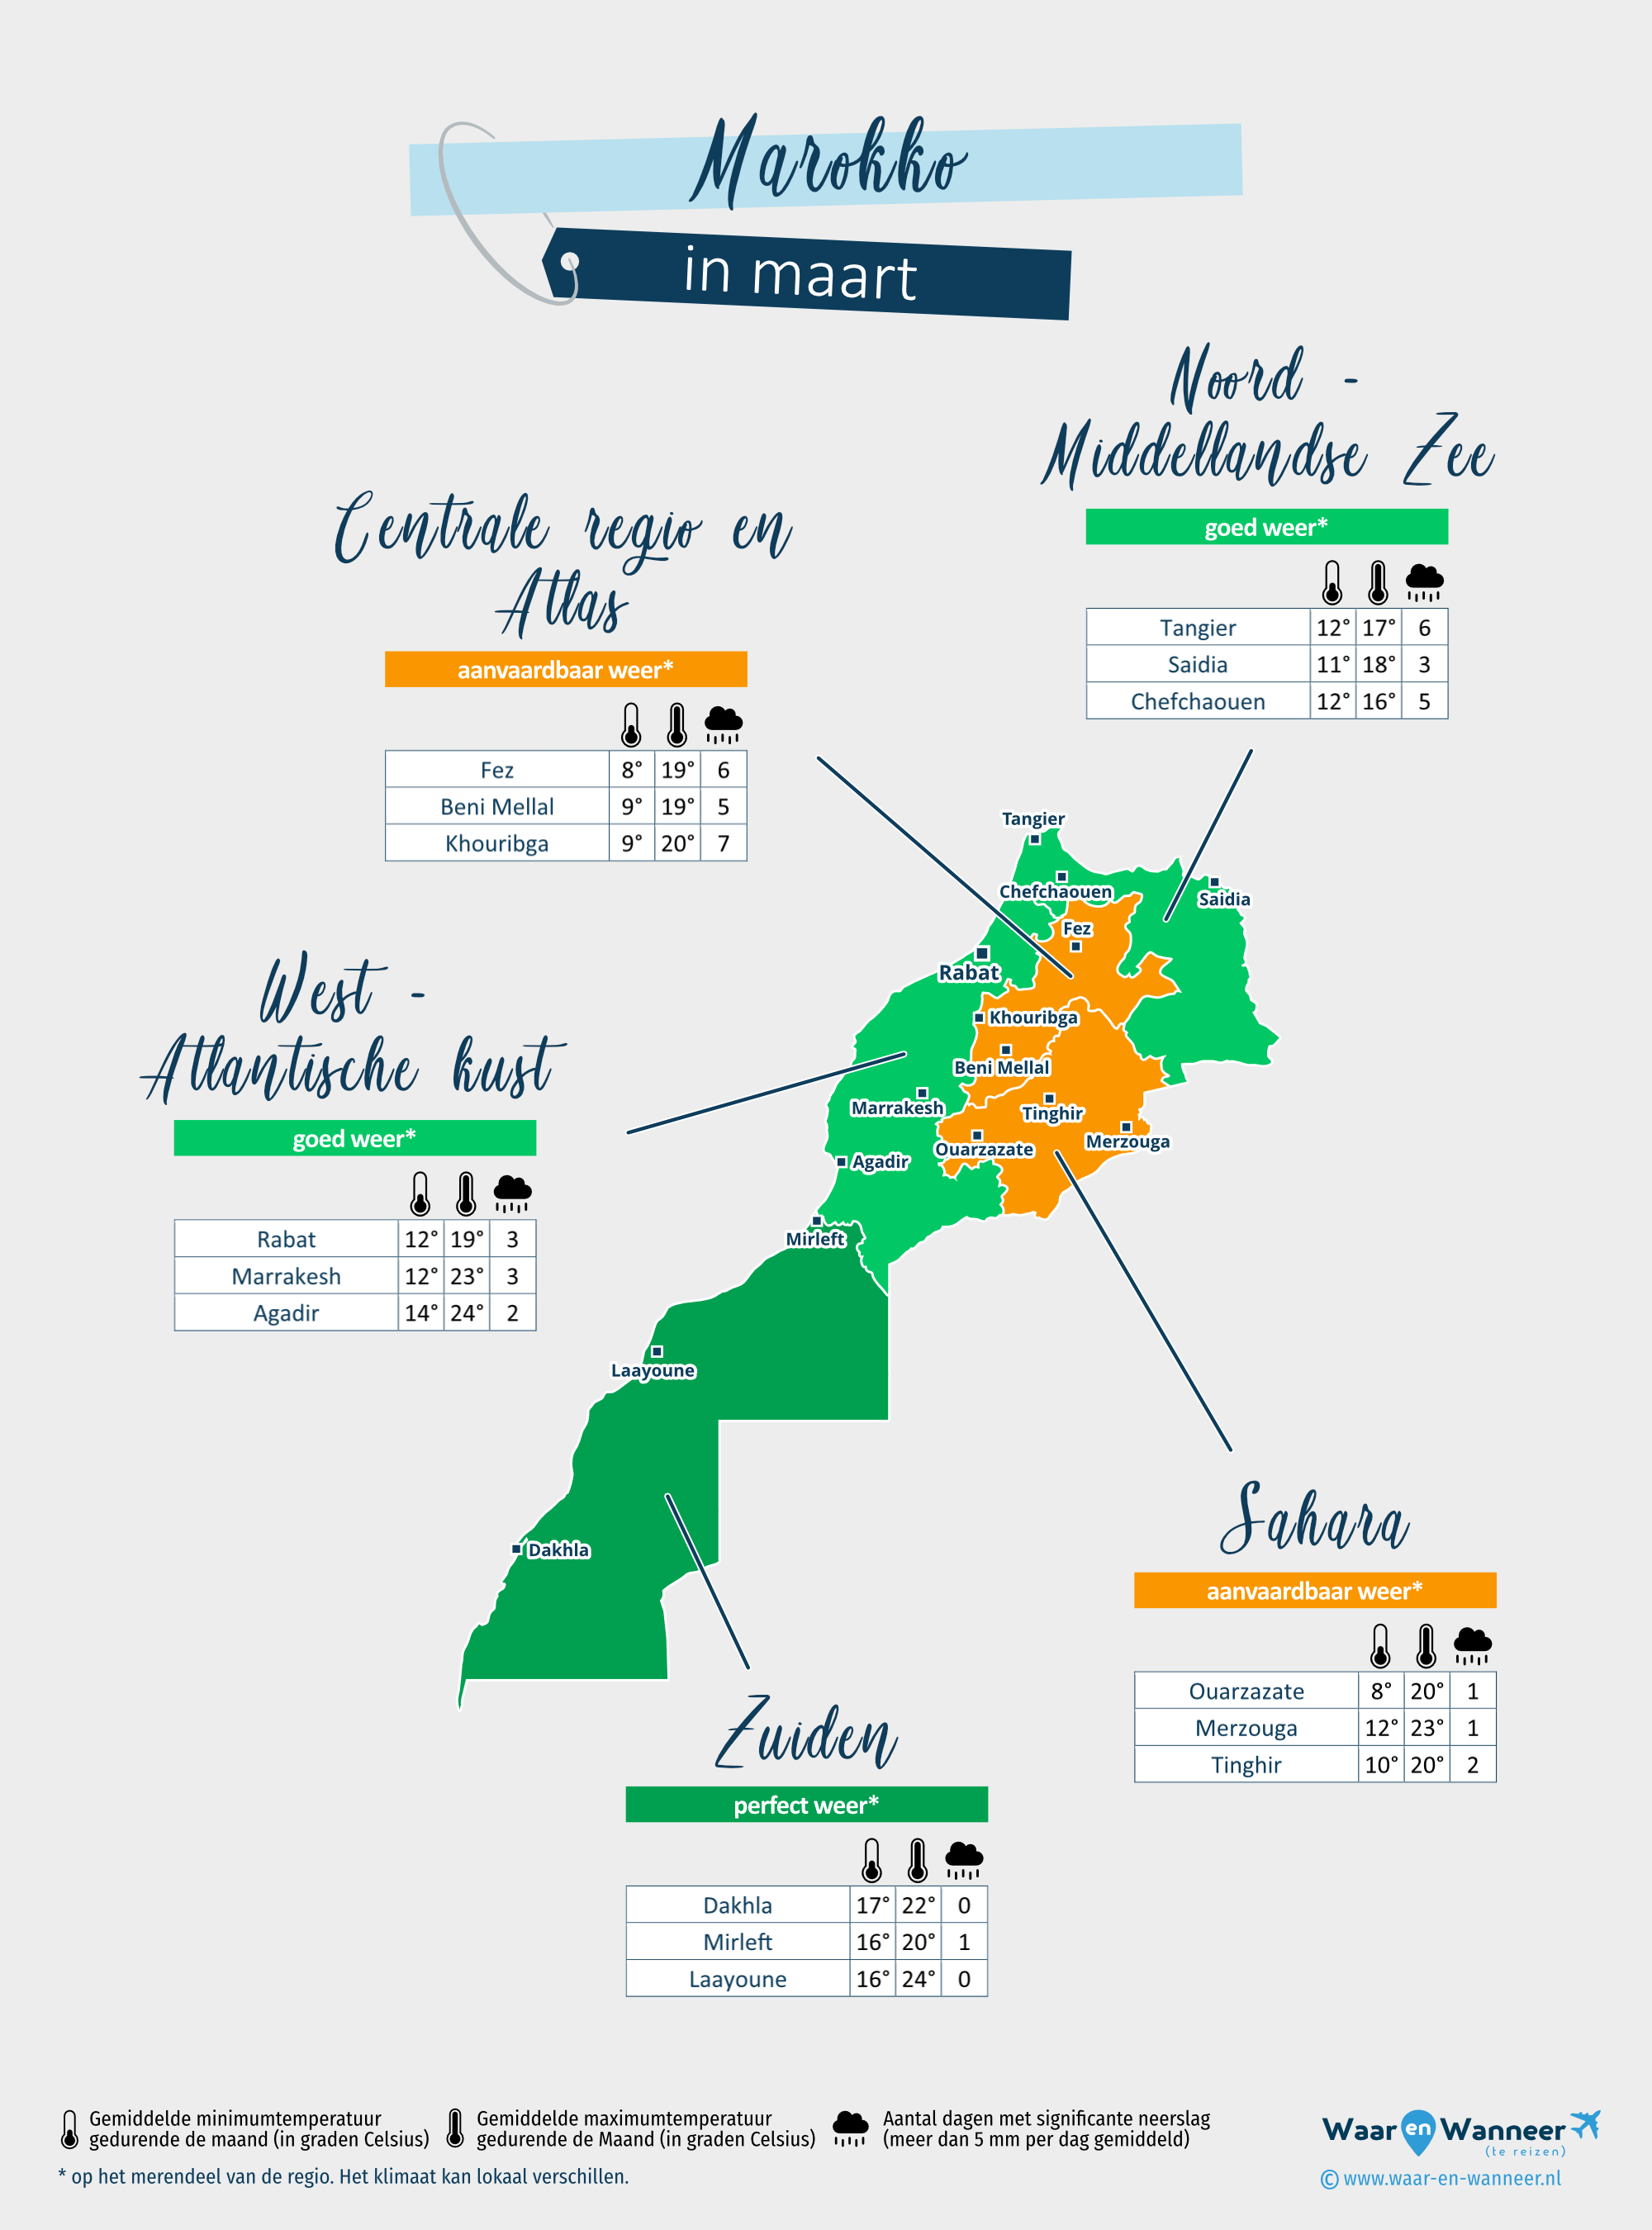 Marokko: weerkaart in maart in verschillende regio's